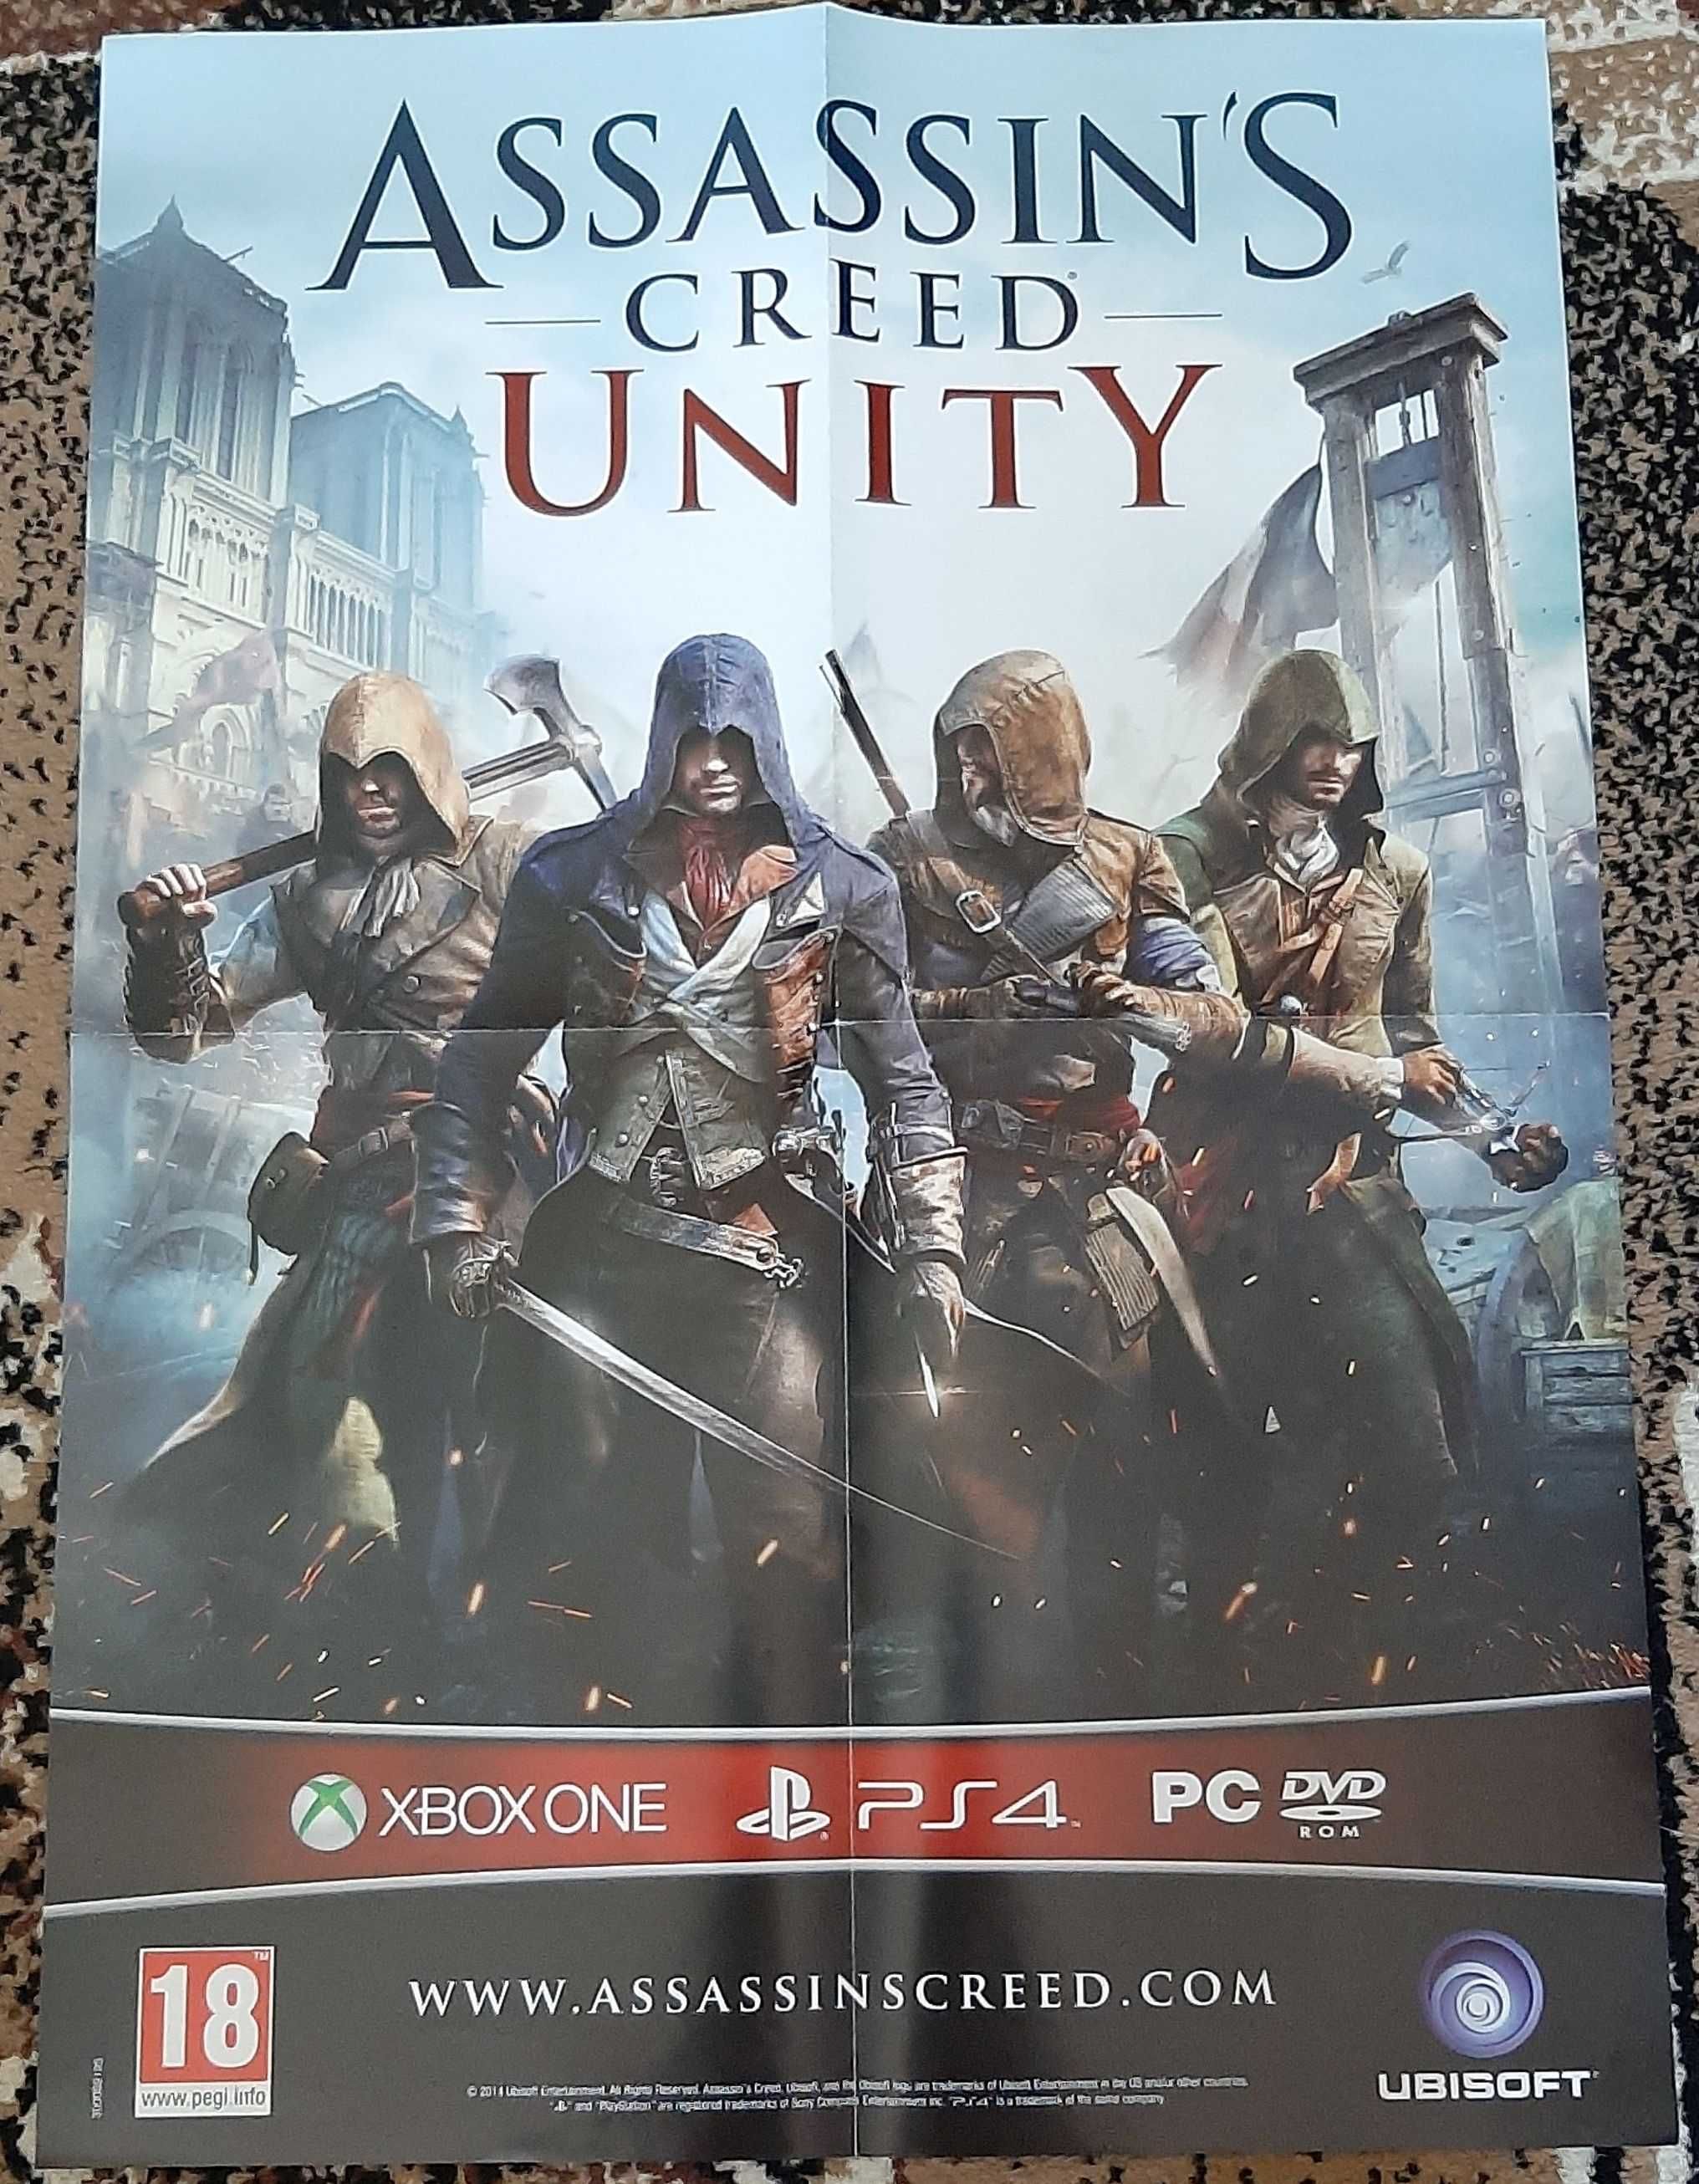 Plakat Assassin's Creed Unity oraz Assassin's Creed Rogue